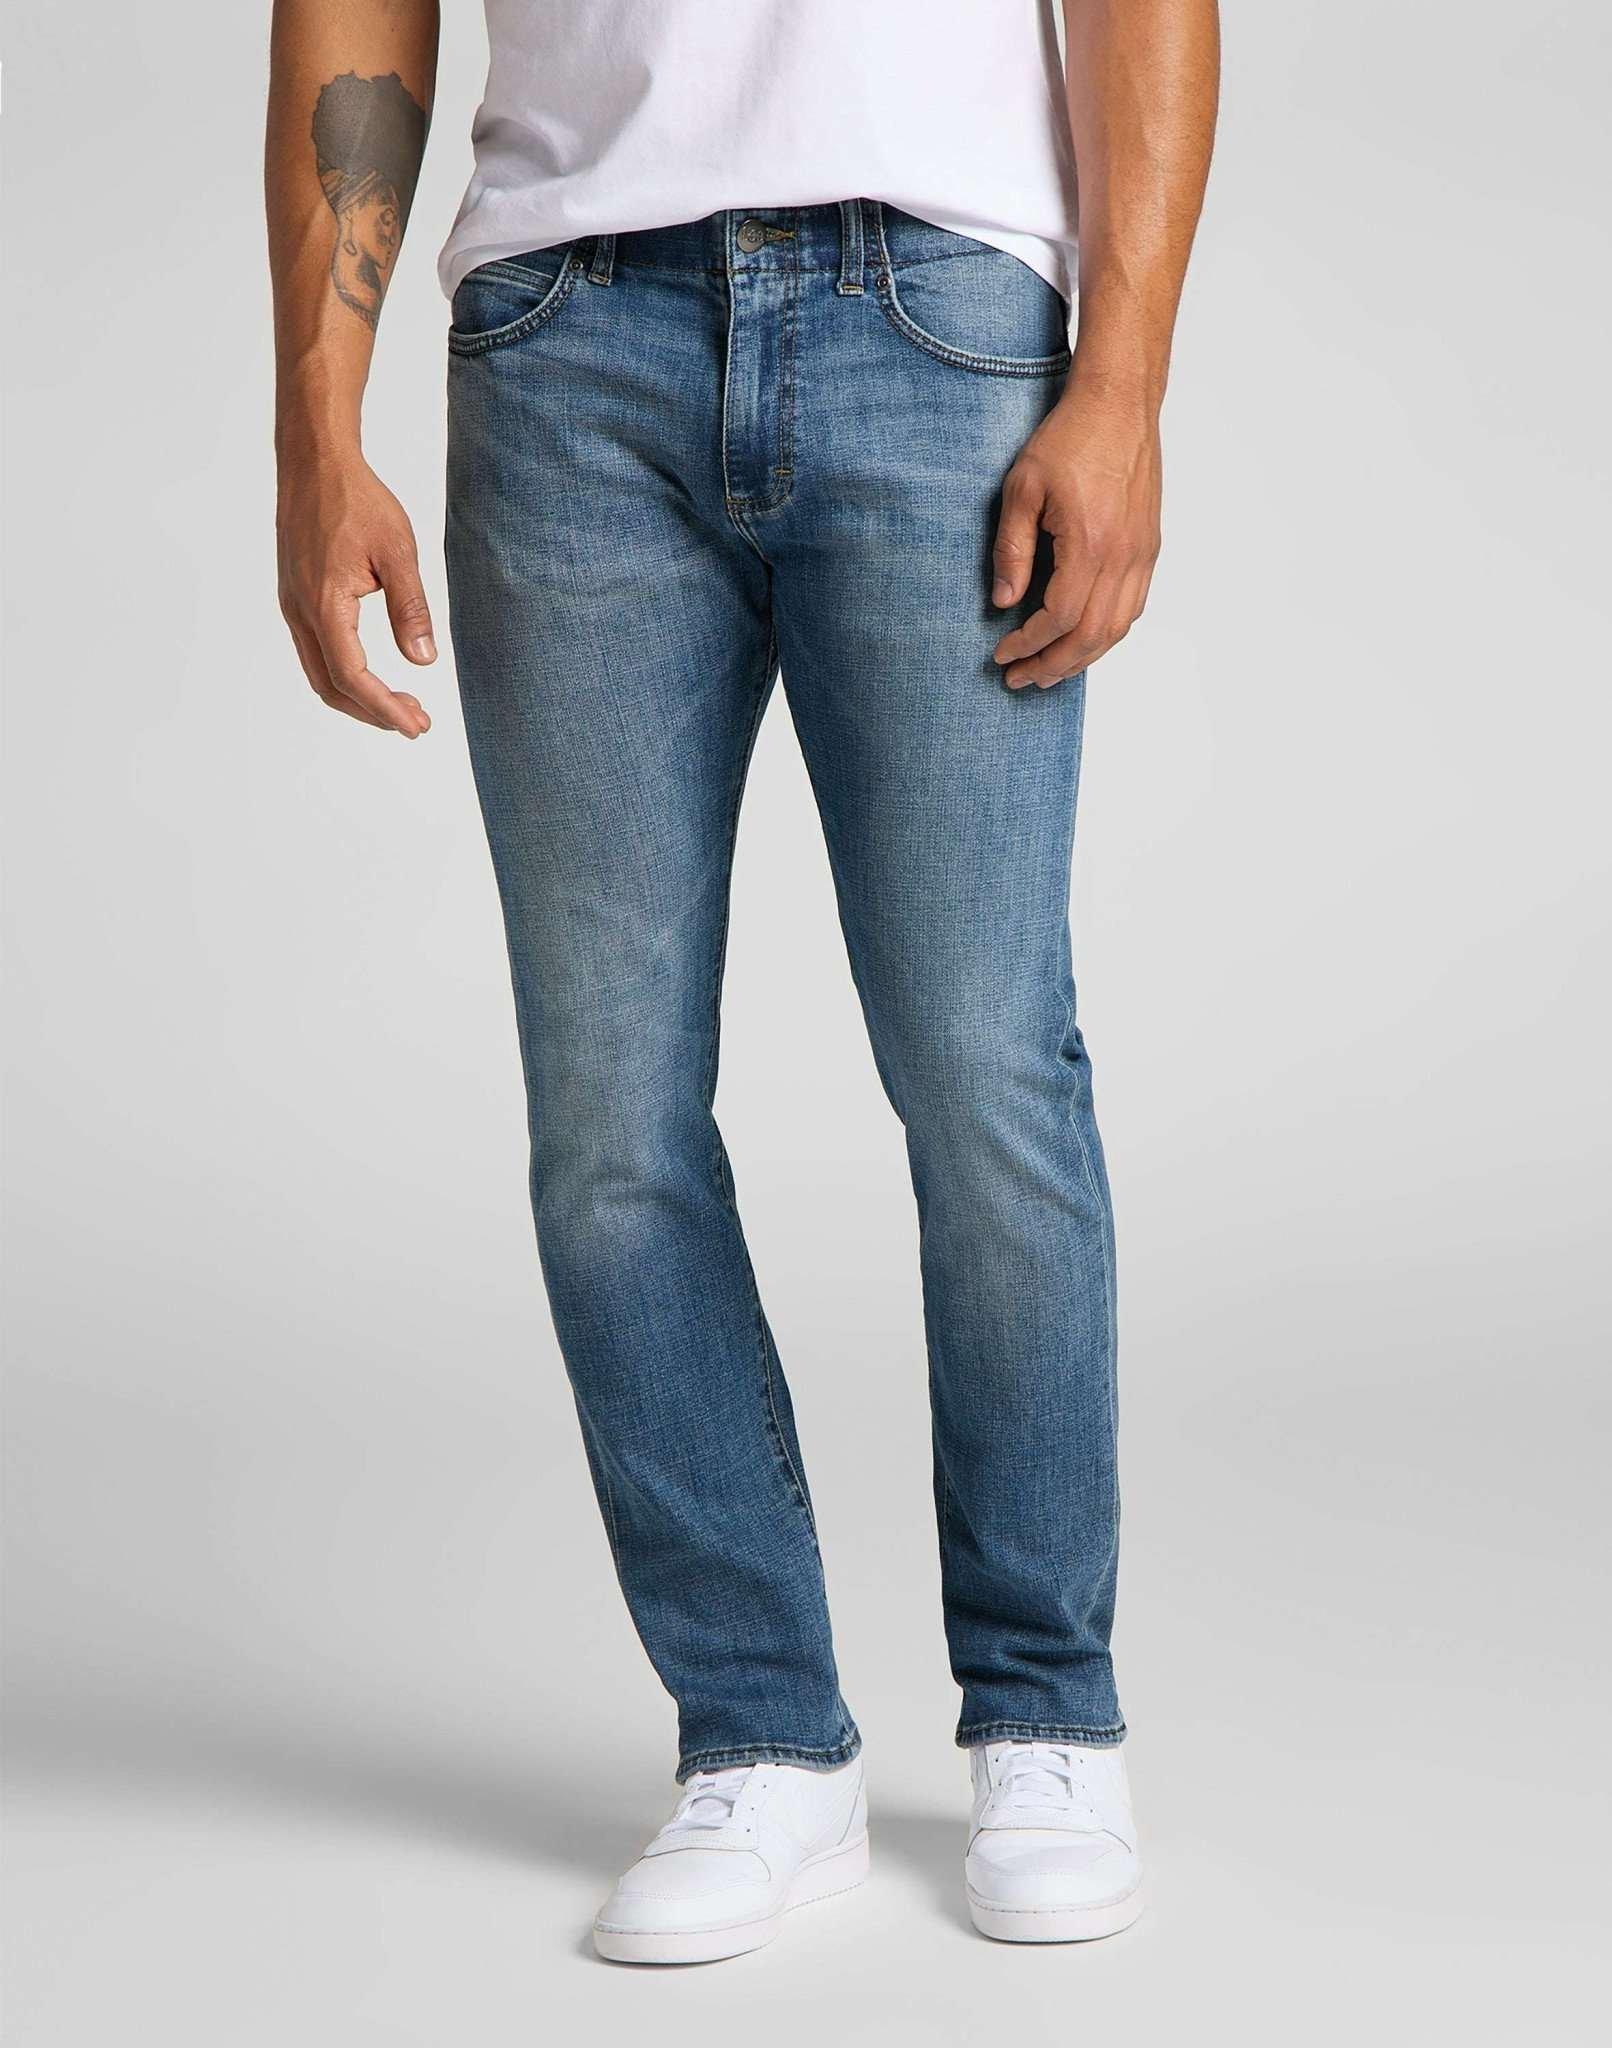 Jeans Slim Fit Mvp Herren Blau Denim L32/W29 von Lee